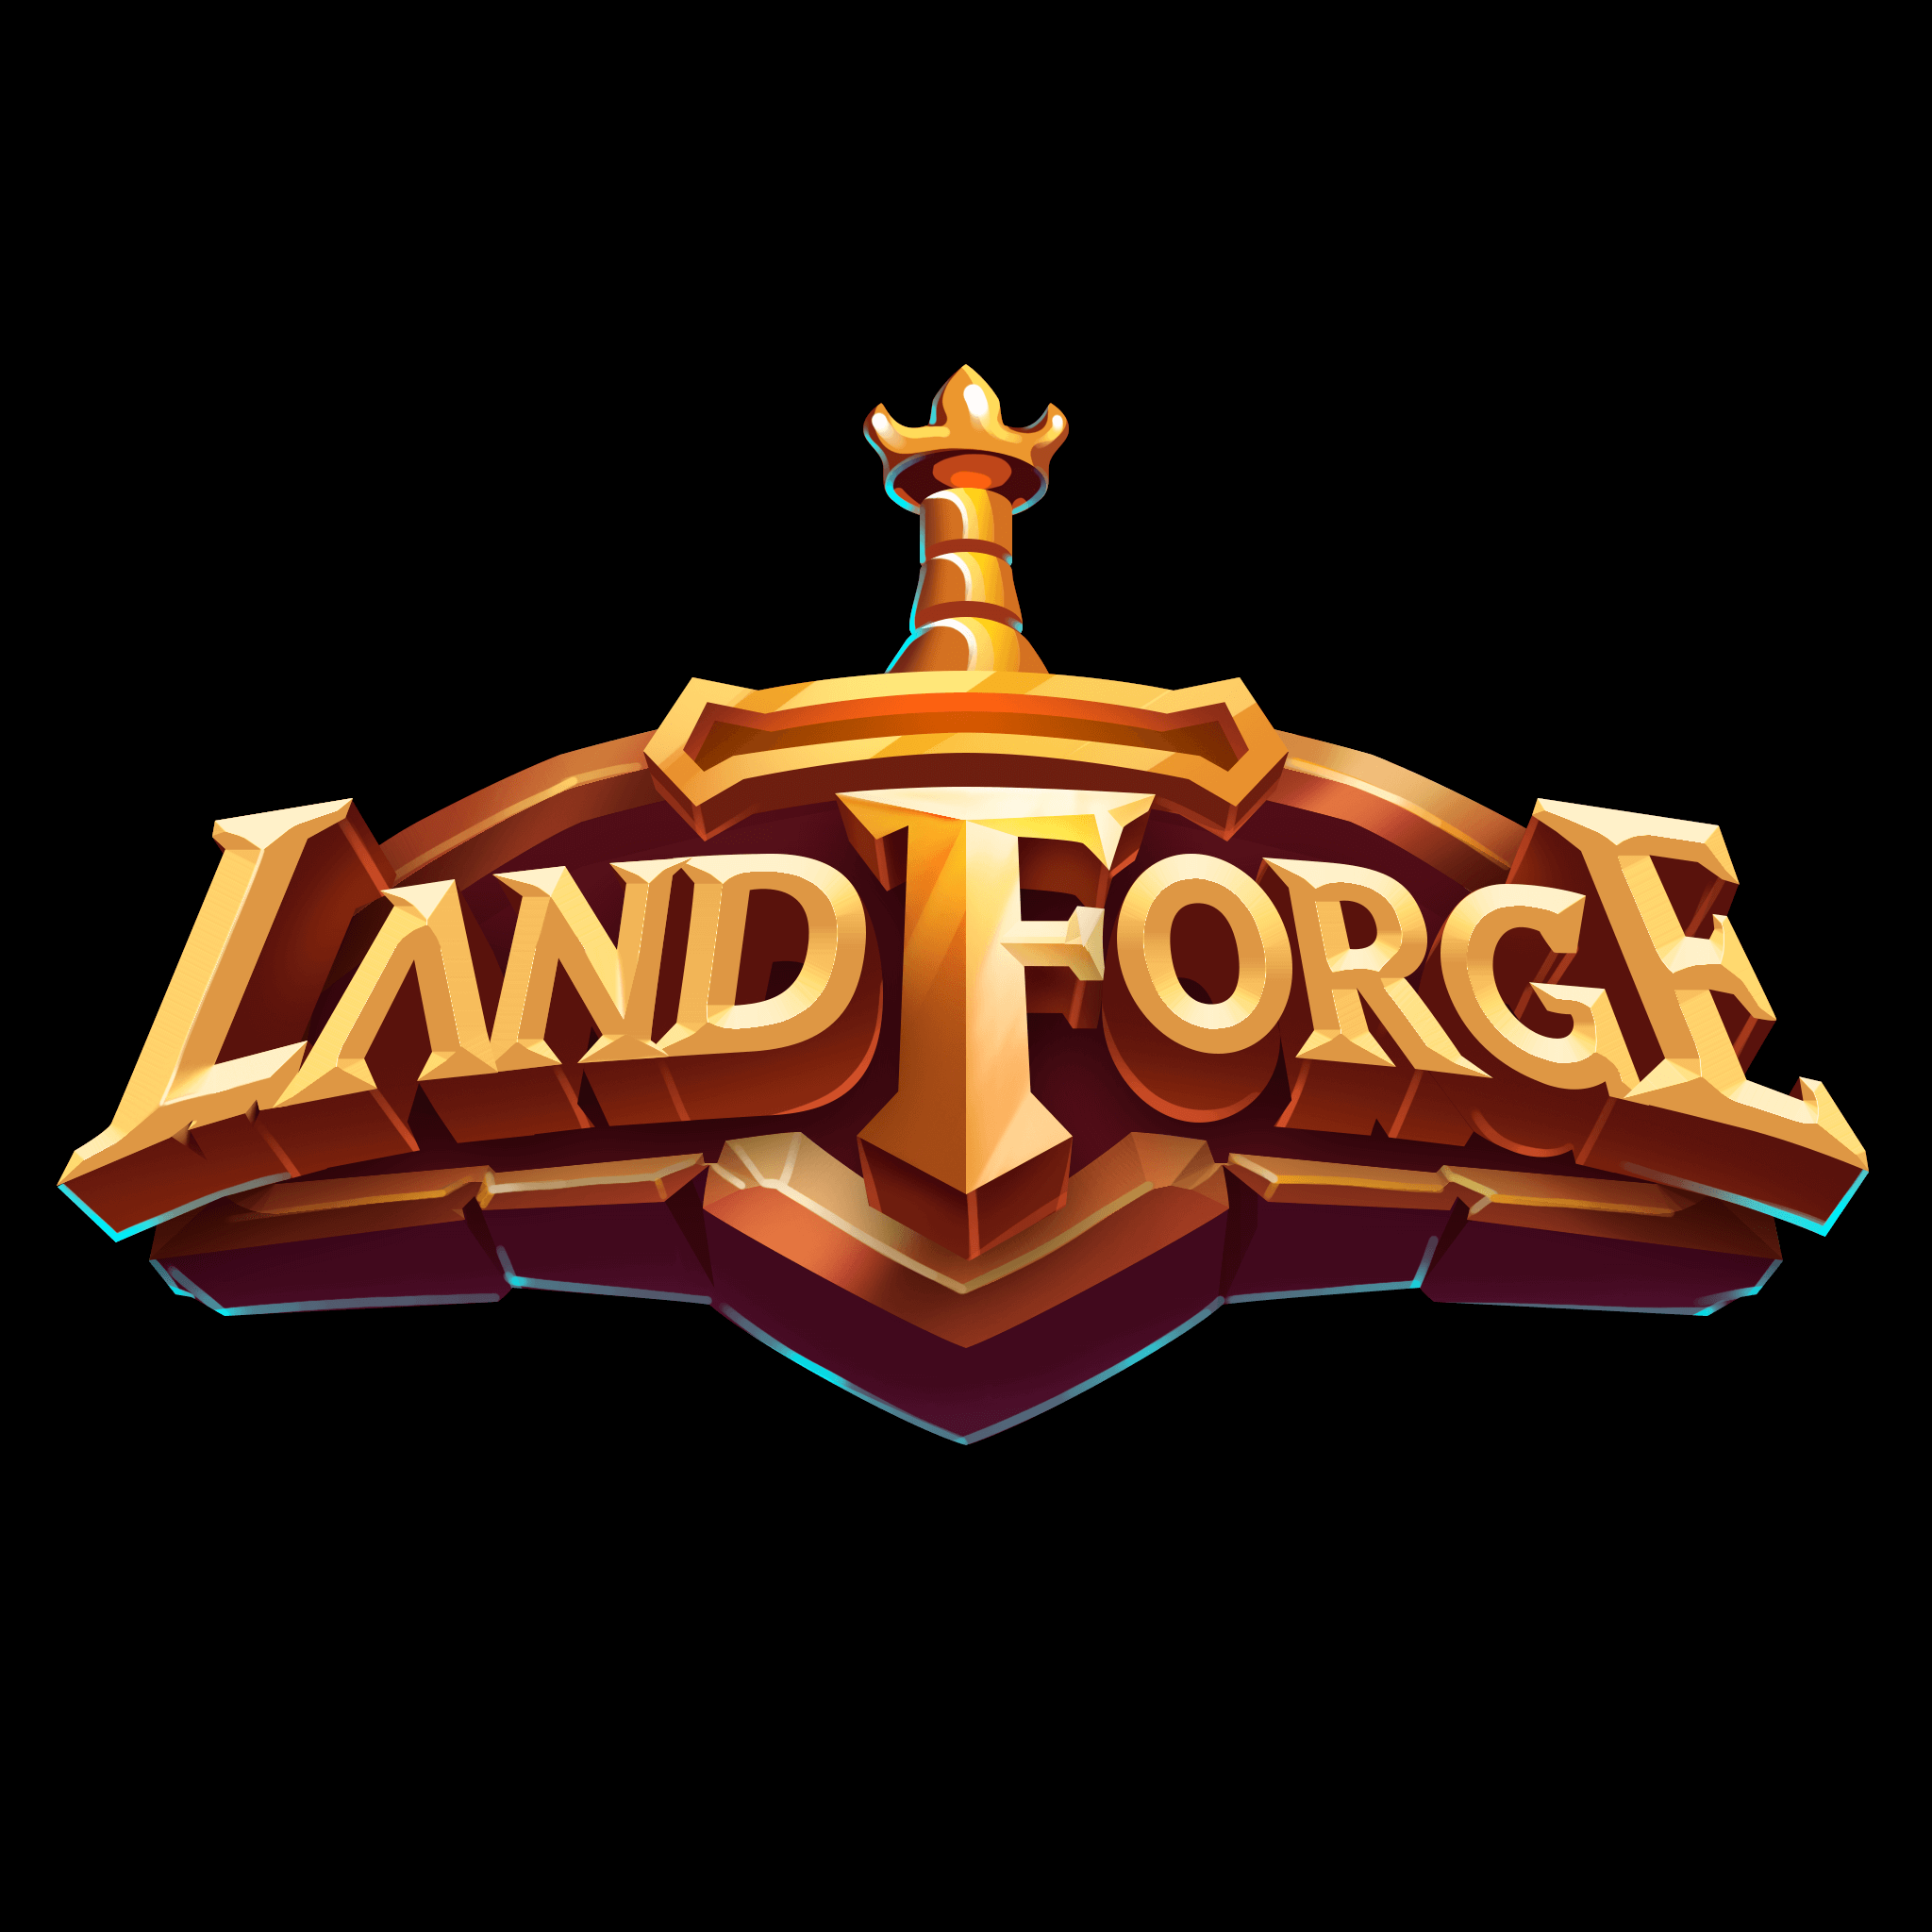 LandForge Banner Image